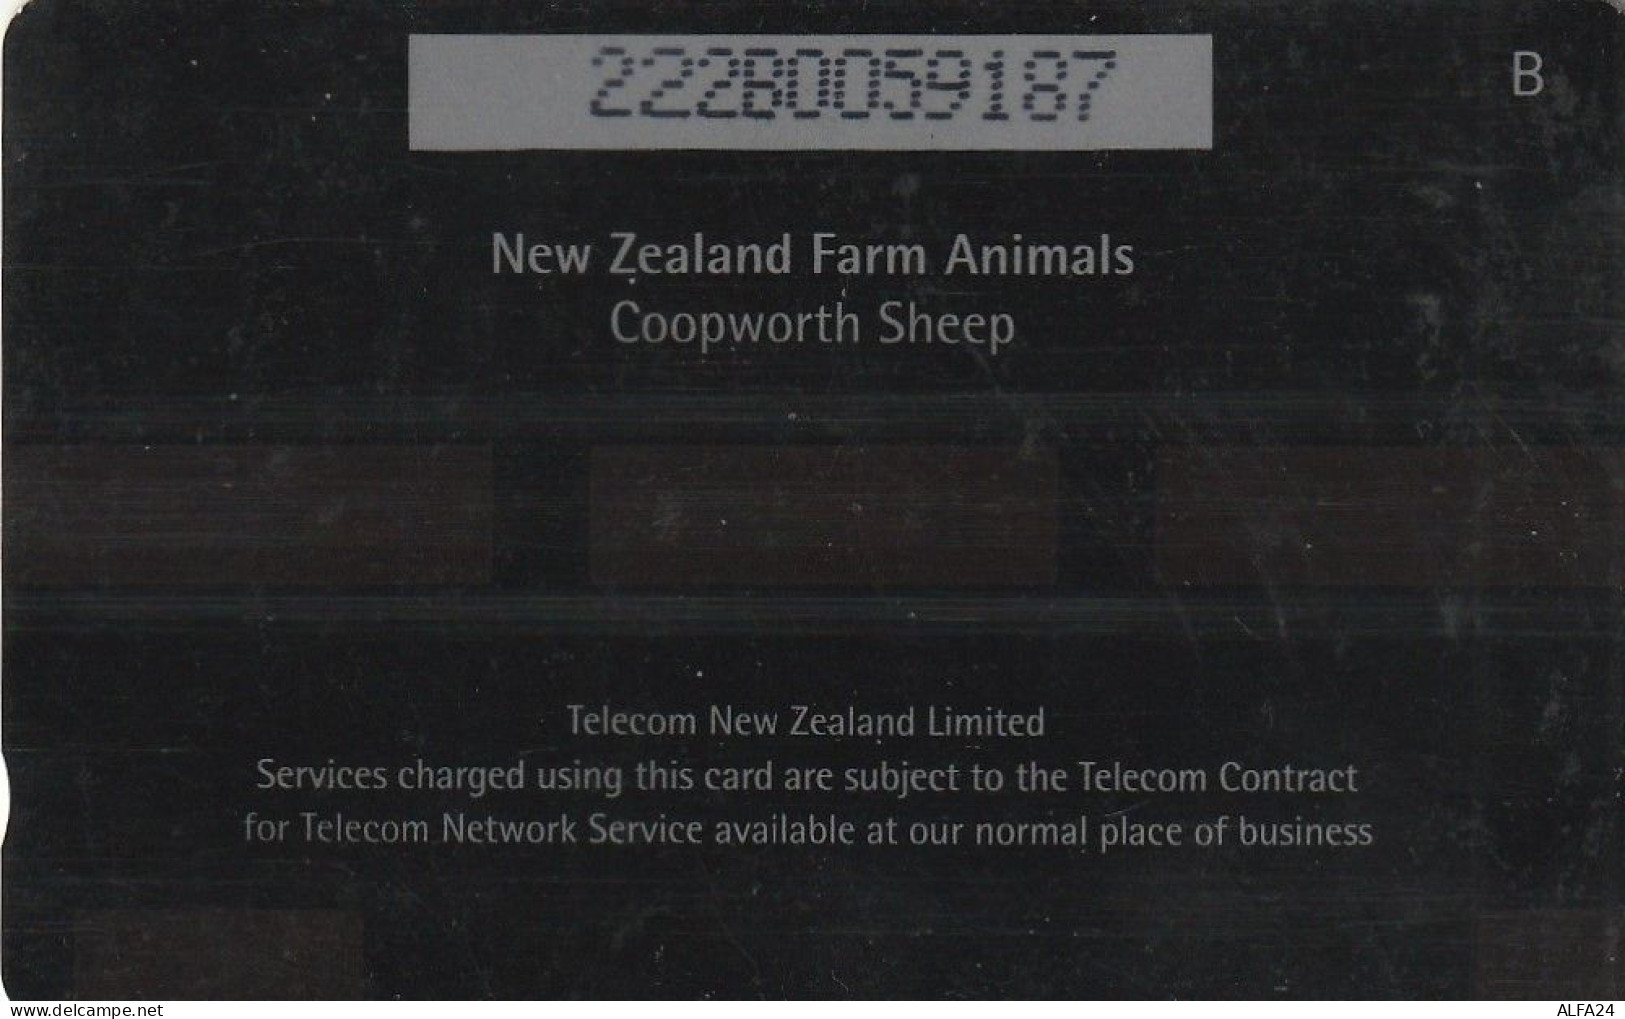 PHONE CARD NUOVA ZELANDA  (CZ2344 - Neuseeland